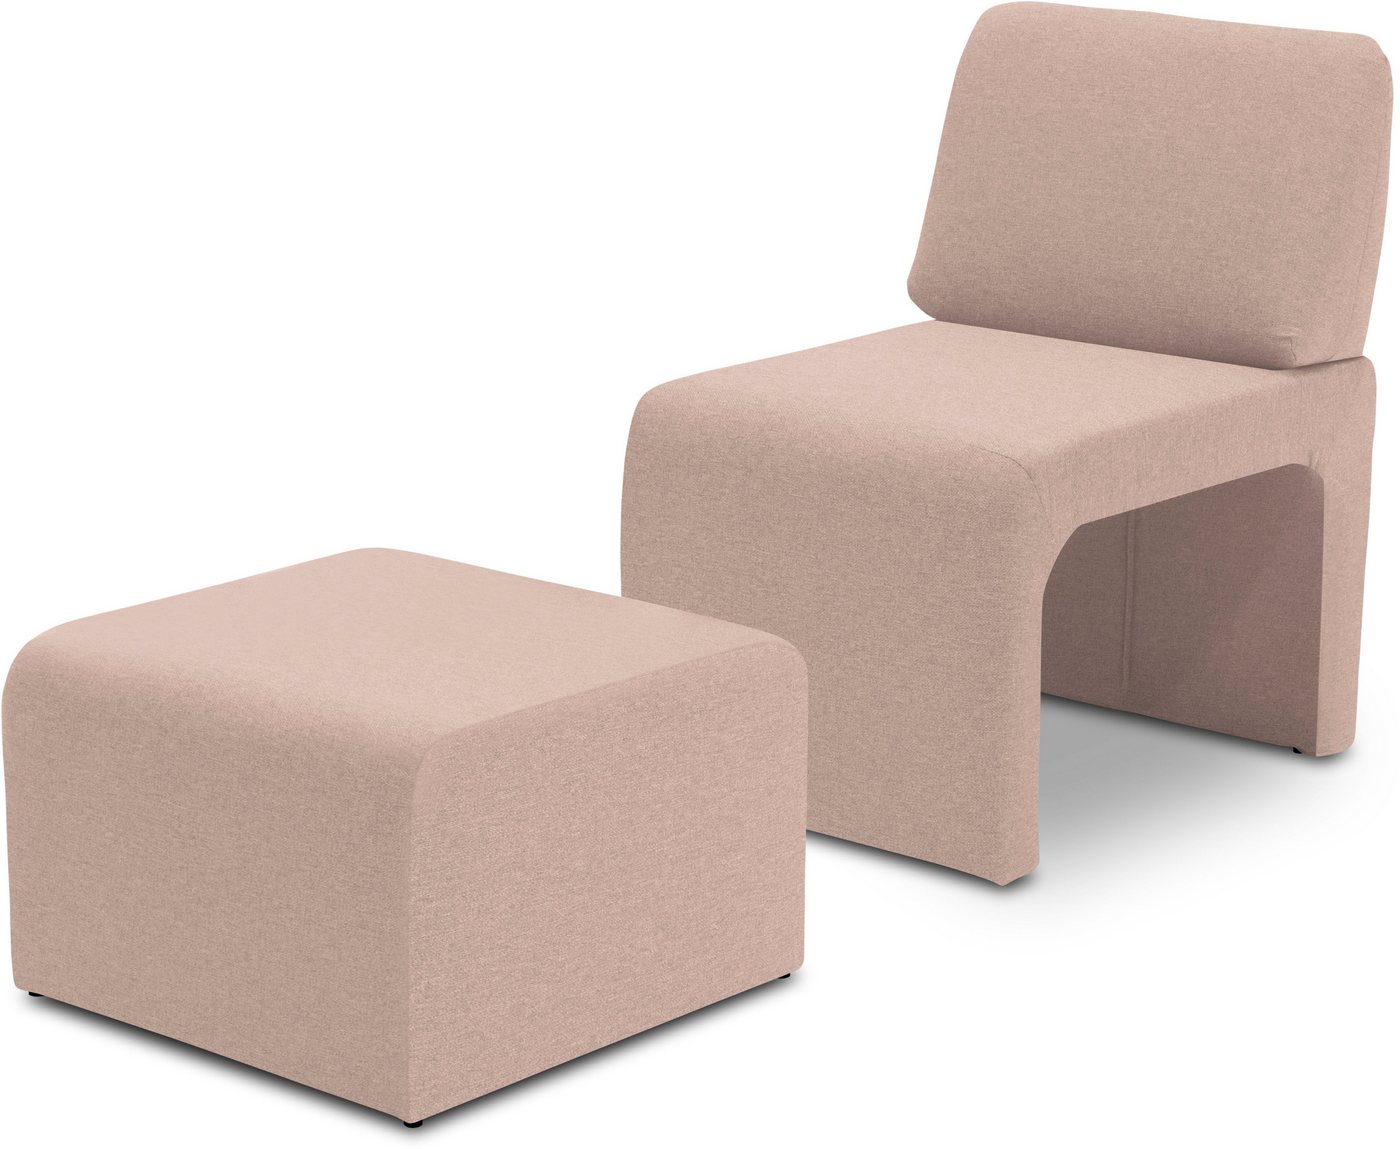 DOMO collection Sessel 700017 ideal für kleine Räume, platzsparend, trotzdem bequem, Hocker unter dem Sessel verstaubar, lieferbar in nur 2 Wochen von DOMO collection